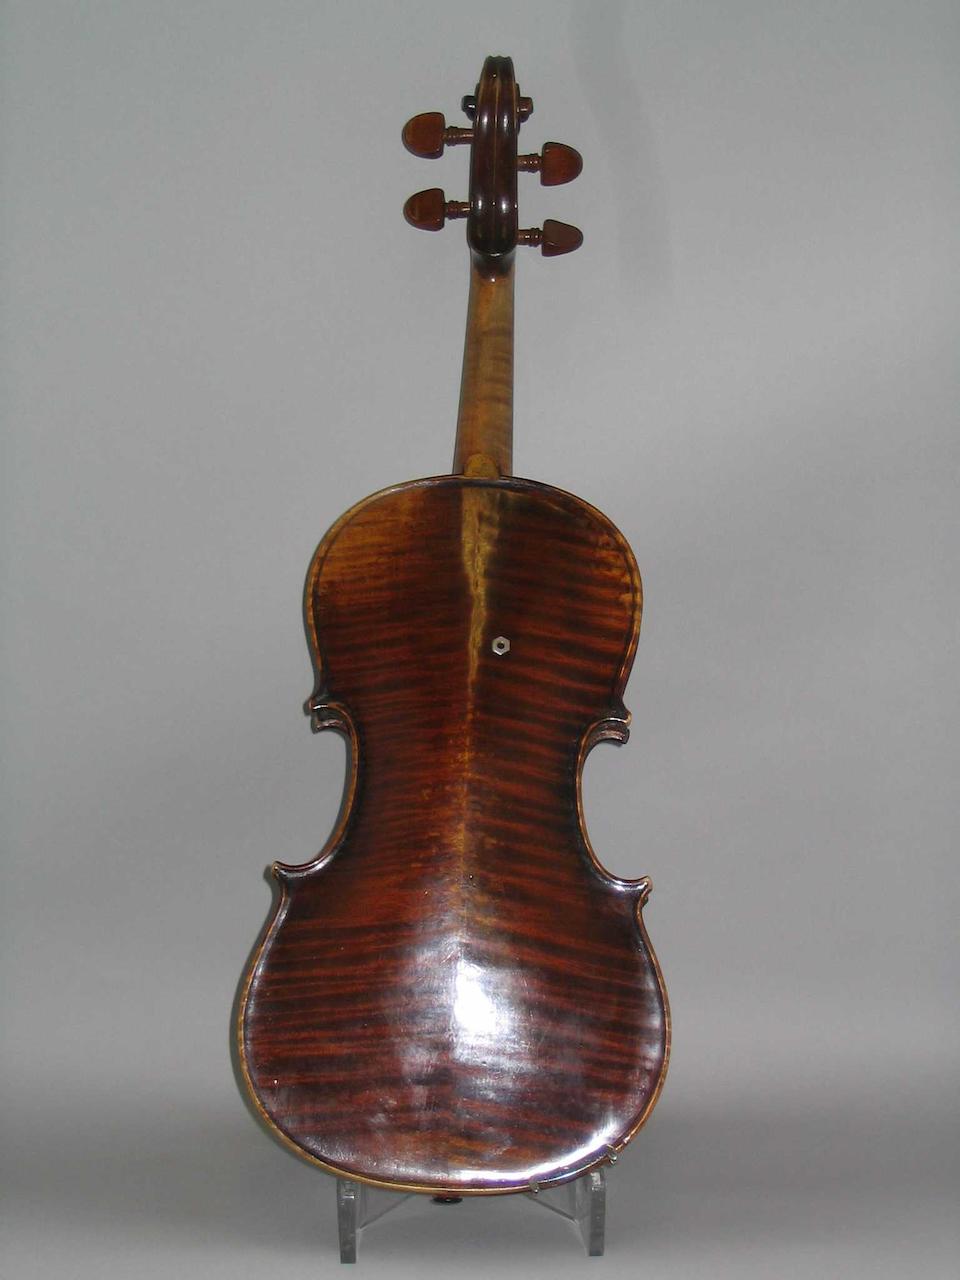 A French Viola circa 1880